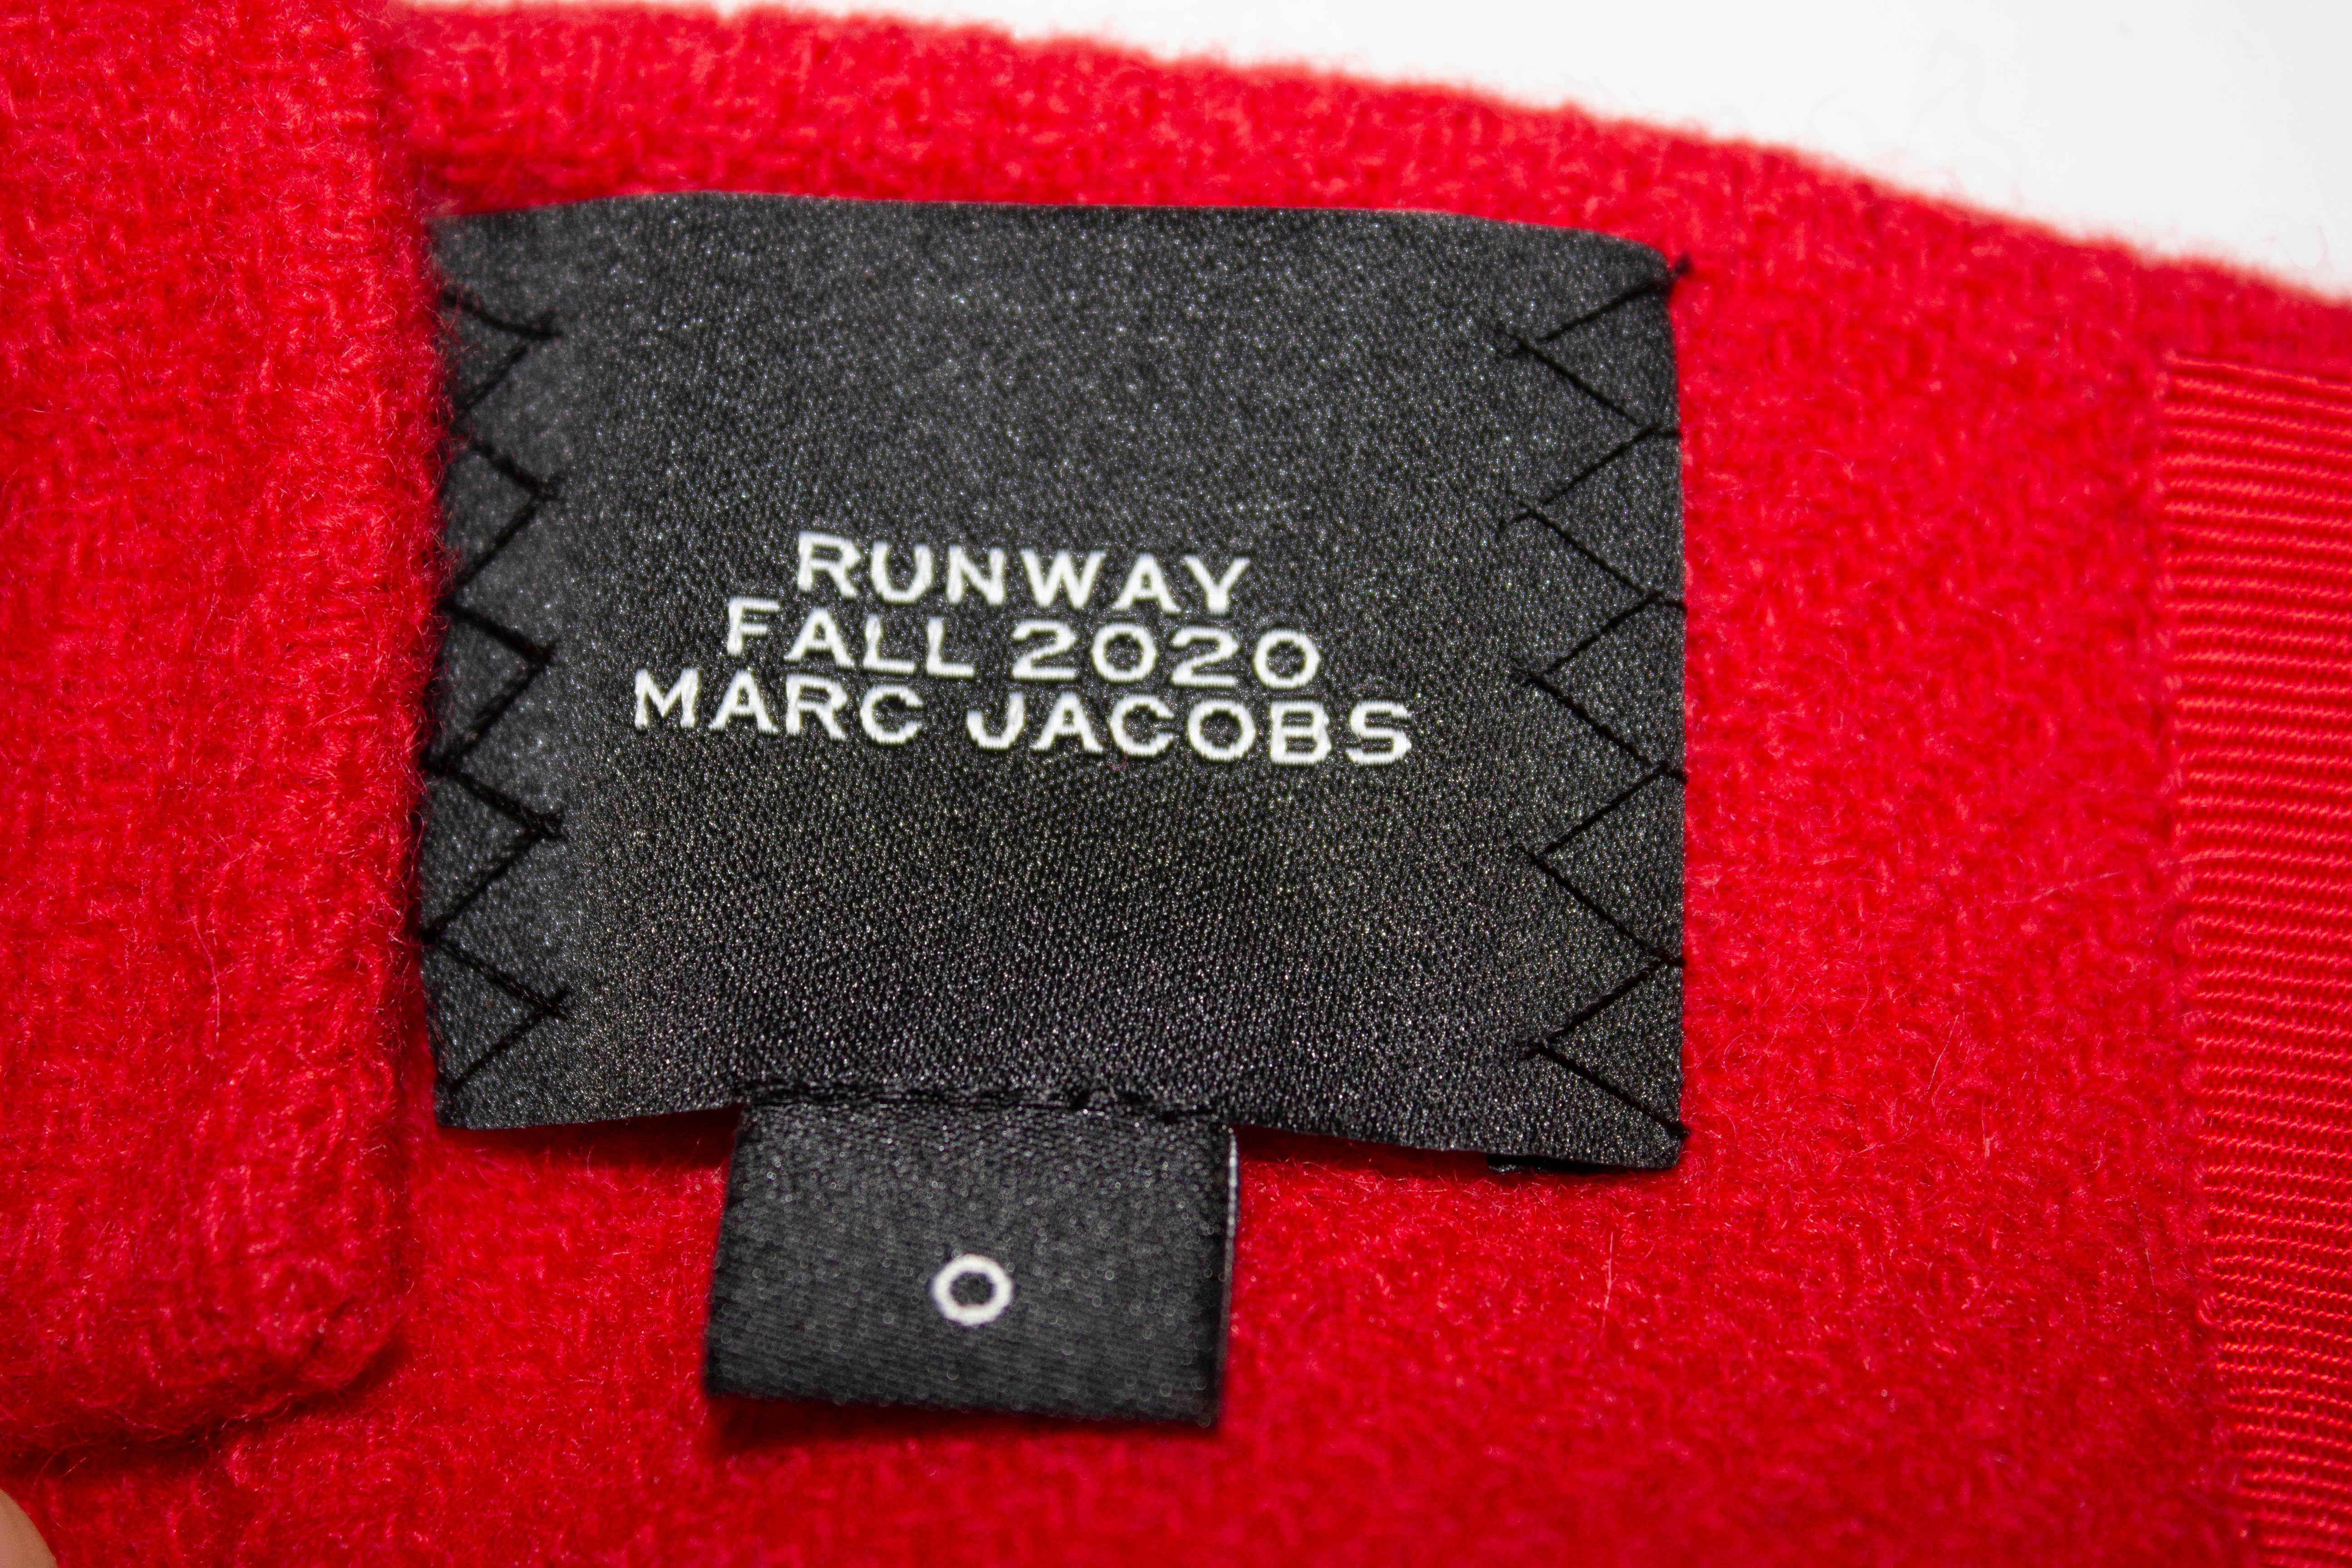 Un top chic pour l'automne par Marc Jacobs  Dans une laine rouge, le  le haut est de taille 0 et se ferme par des crochets et des œillets. Mesures : Poitrine 33'', longueur 13''